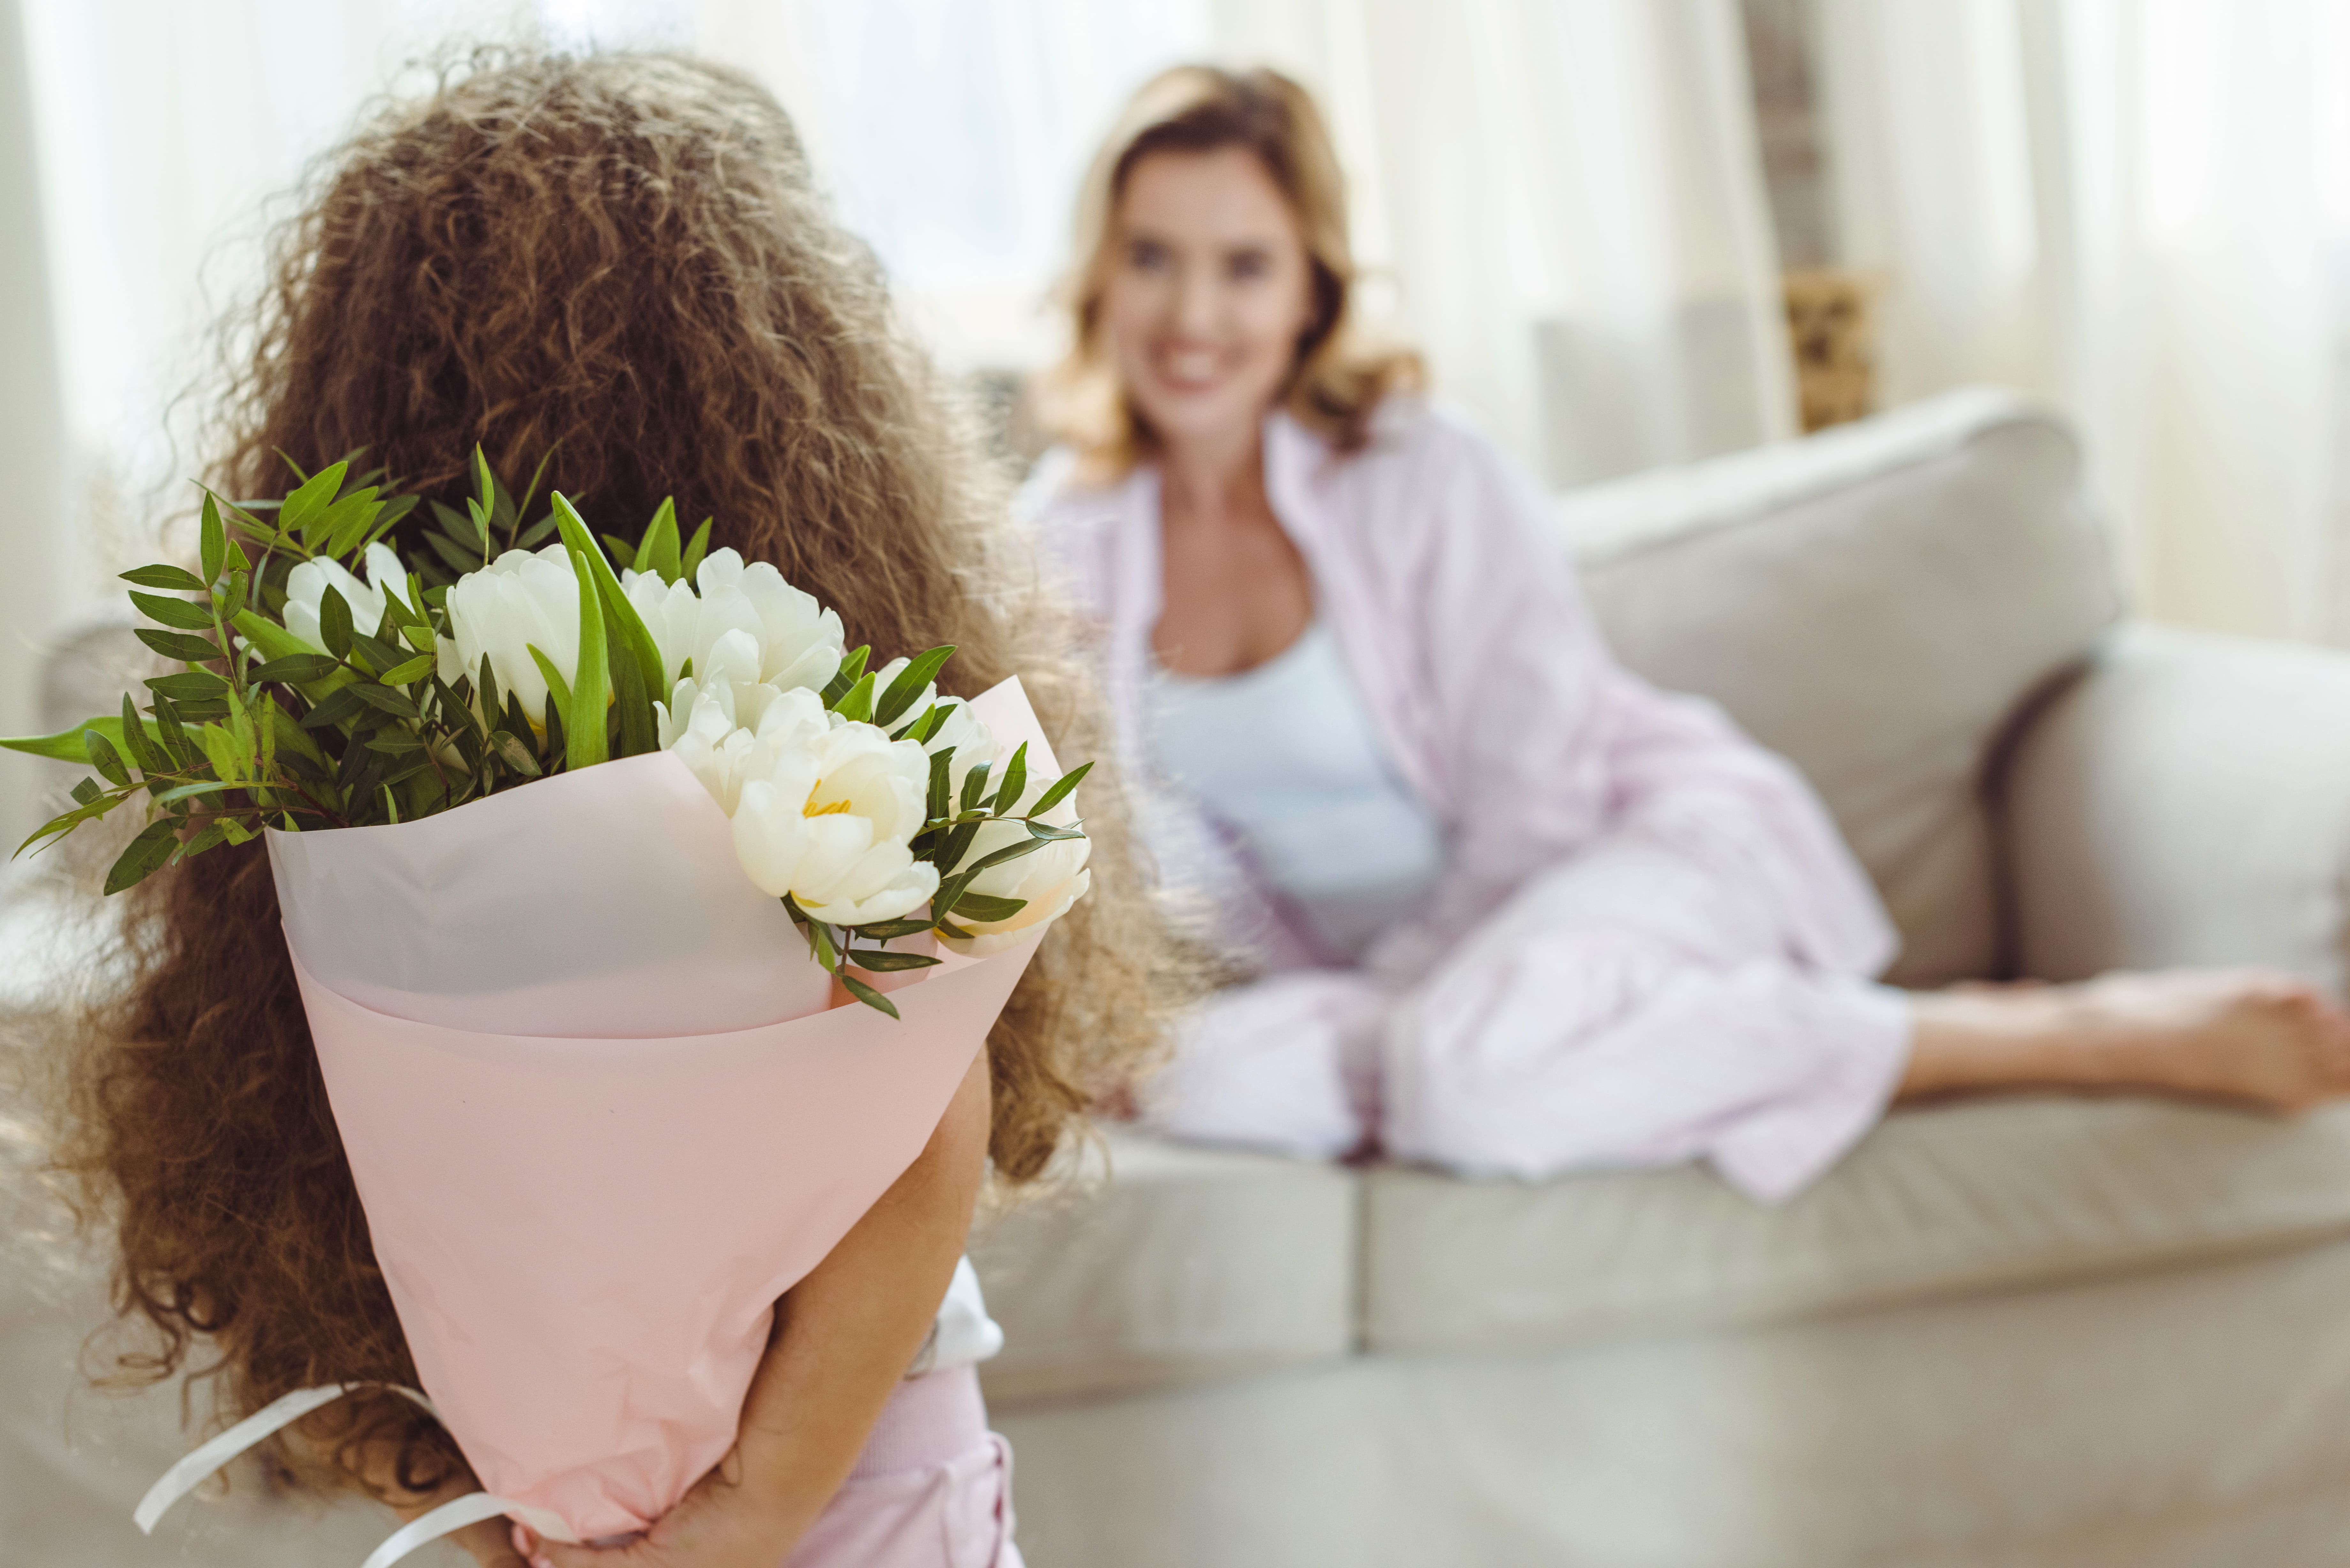 Цветы маме фото - День матери: как выбрать цветы в подарок маме. Подарок к дню